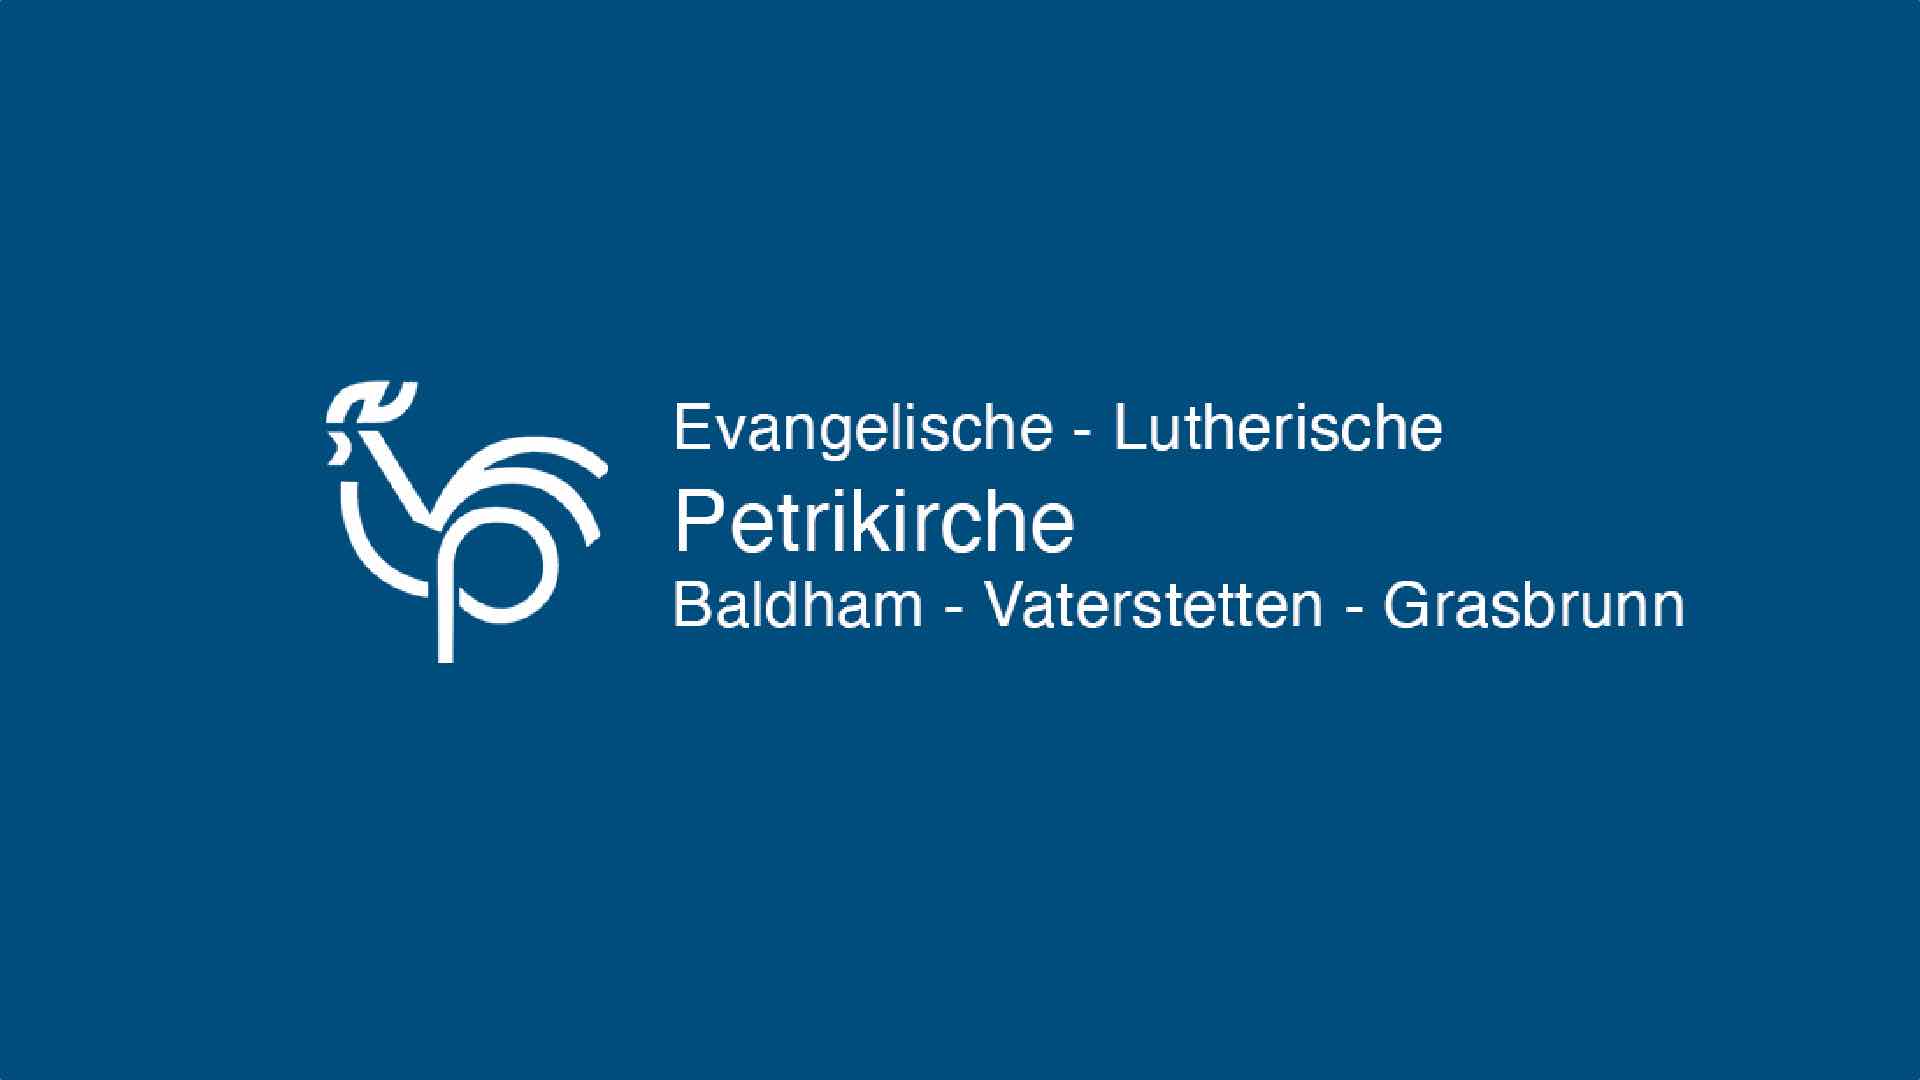 Evangelische Lutherische Petrikirche Baldham-Vaterstetten-Grasbrunn